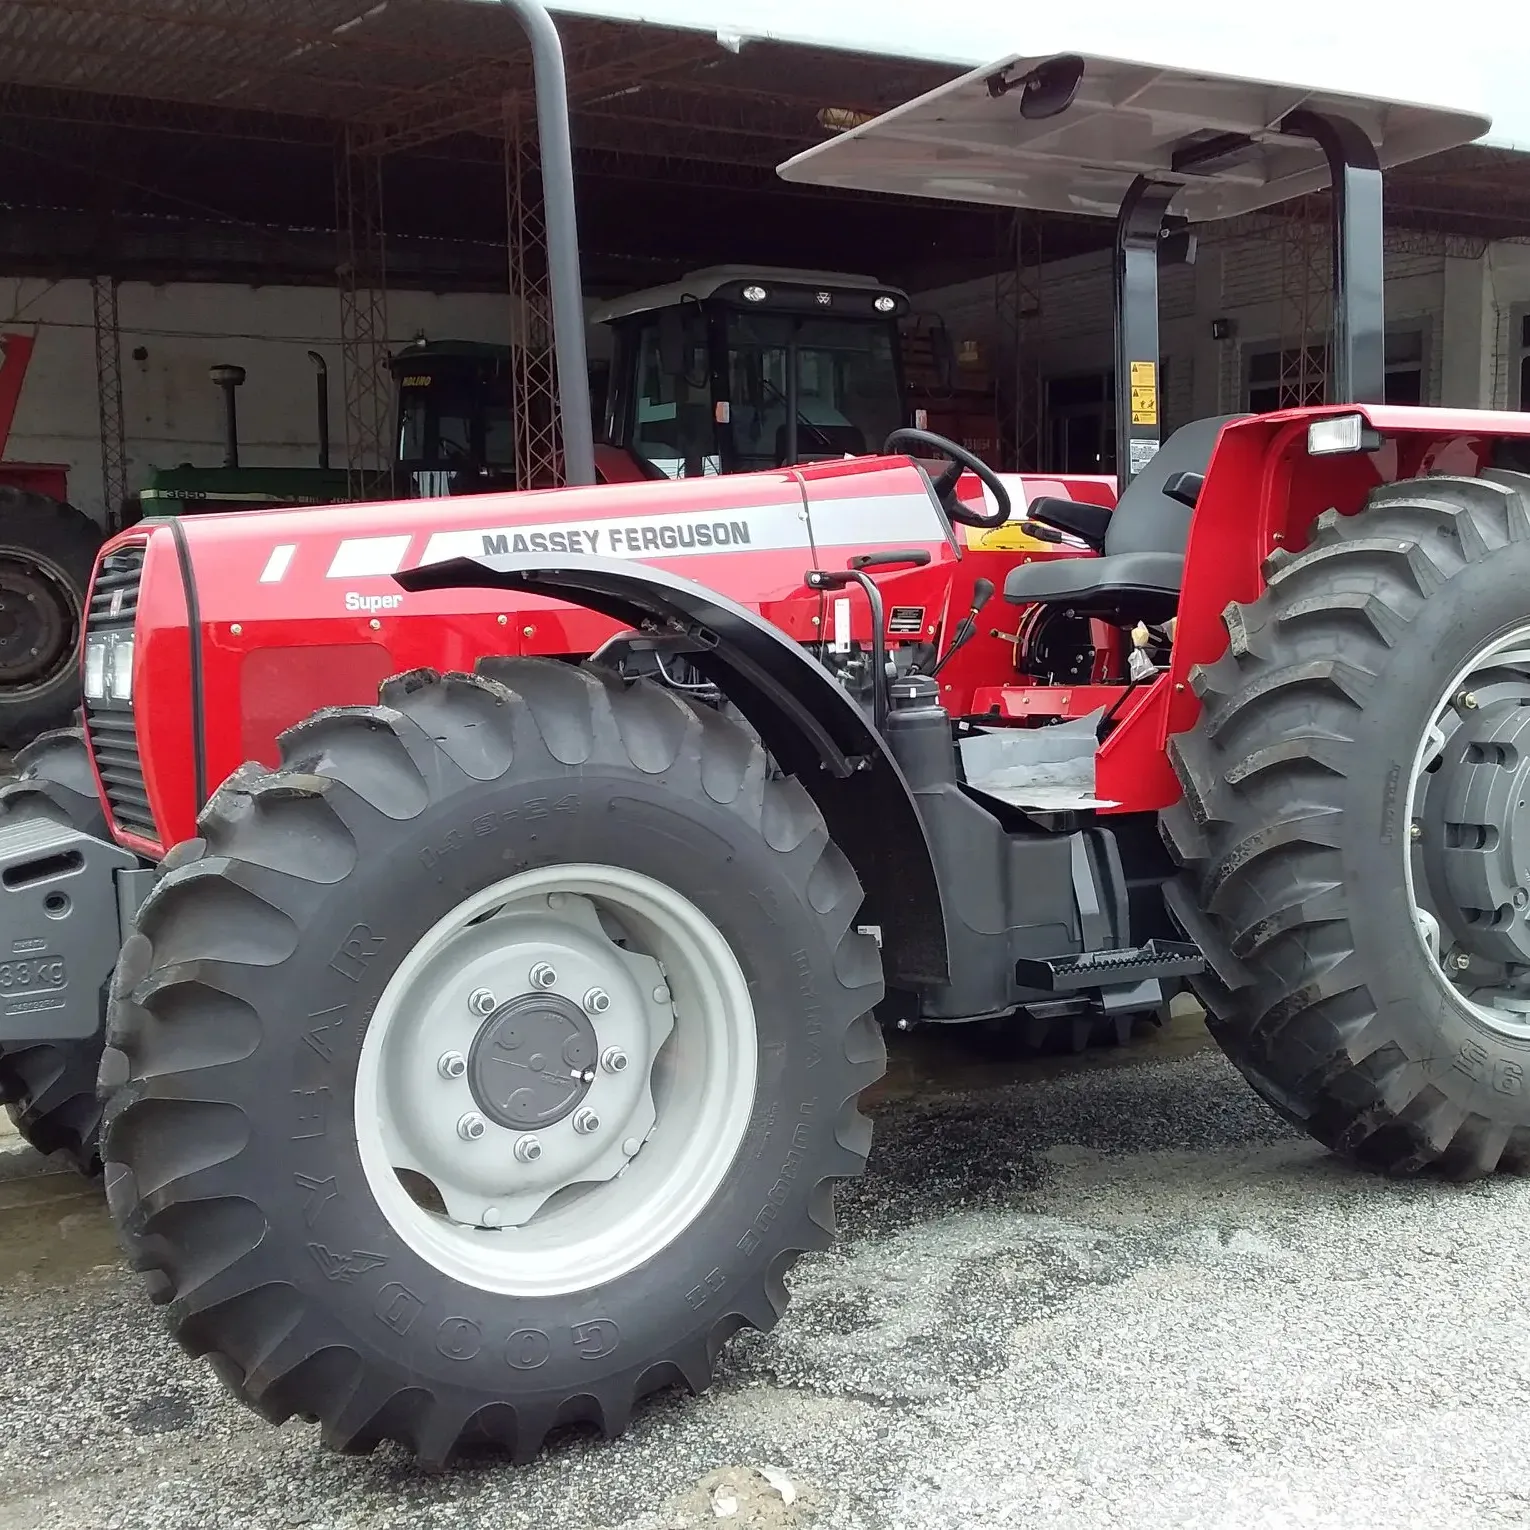 Трактор Massey Forguson, сельскохозяйственное оборудование, 4WD, 291 трактор для сельского хозяйства, для продажи